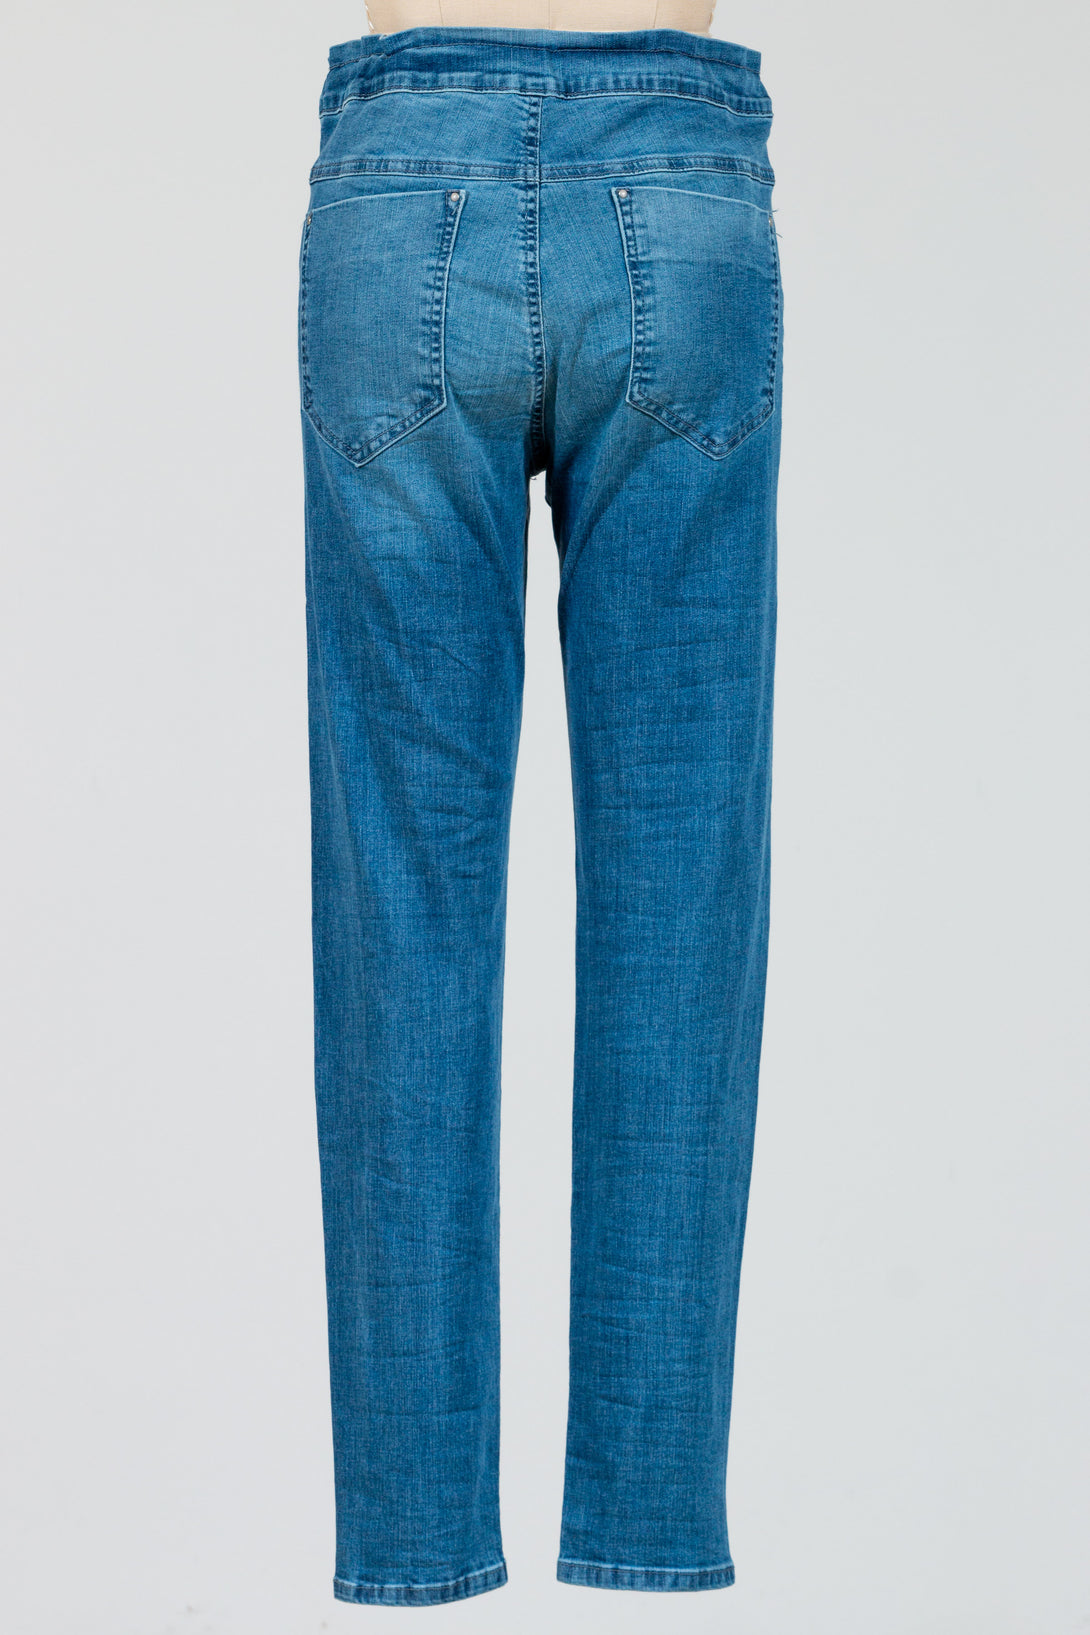 Alembika-Iconic-Jeans-CottonBlend-Denim